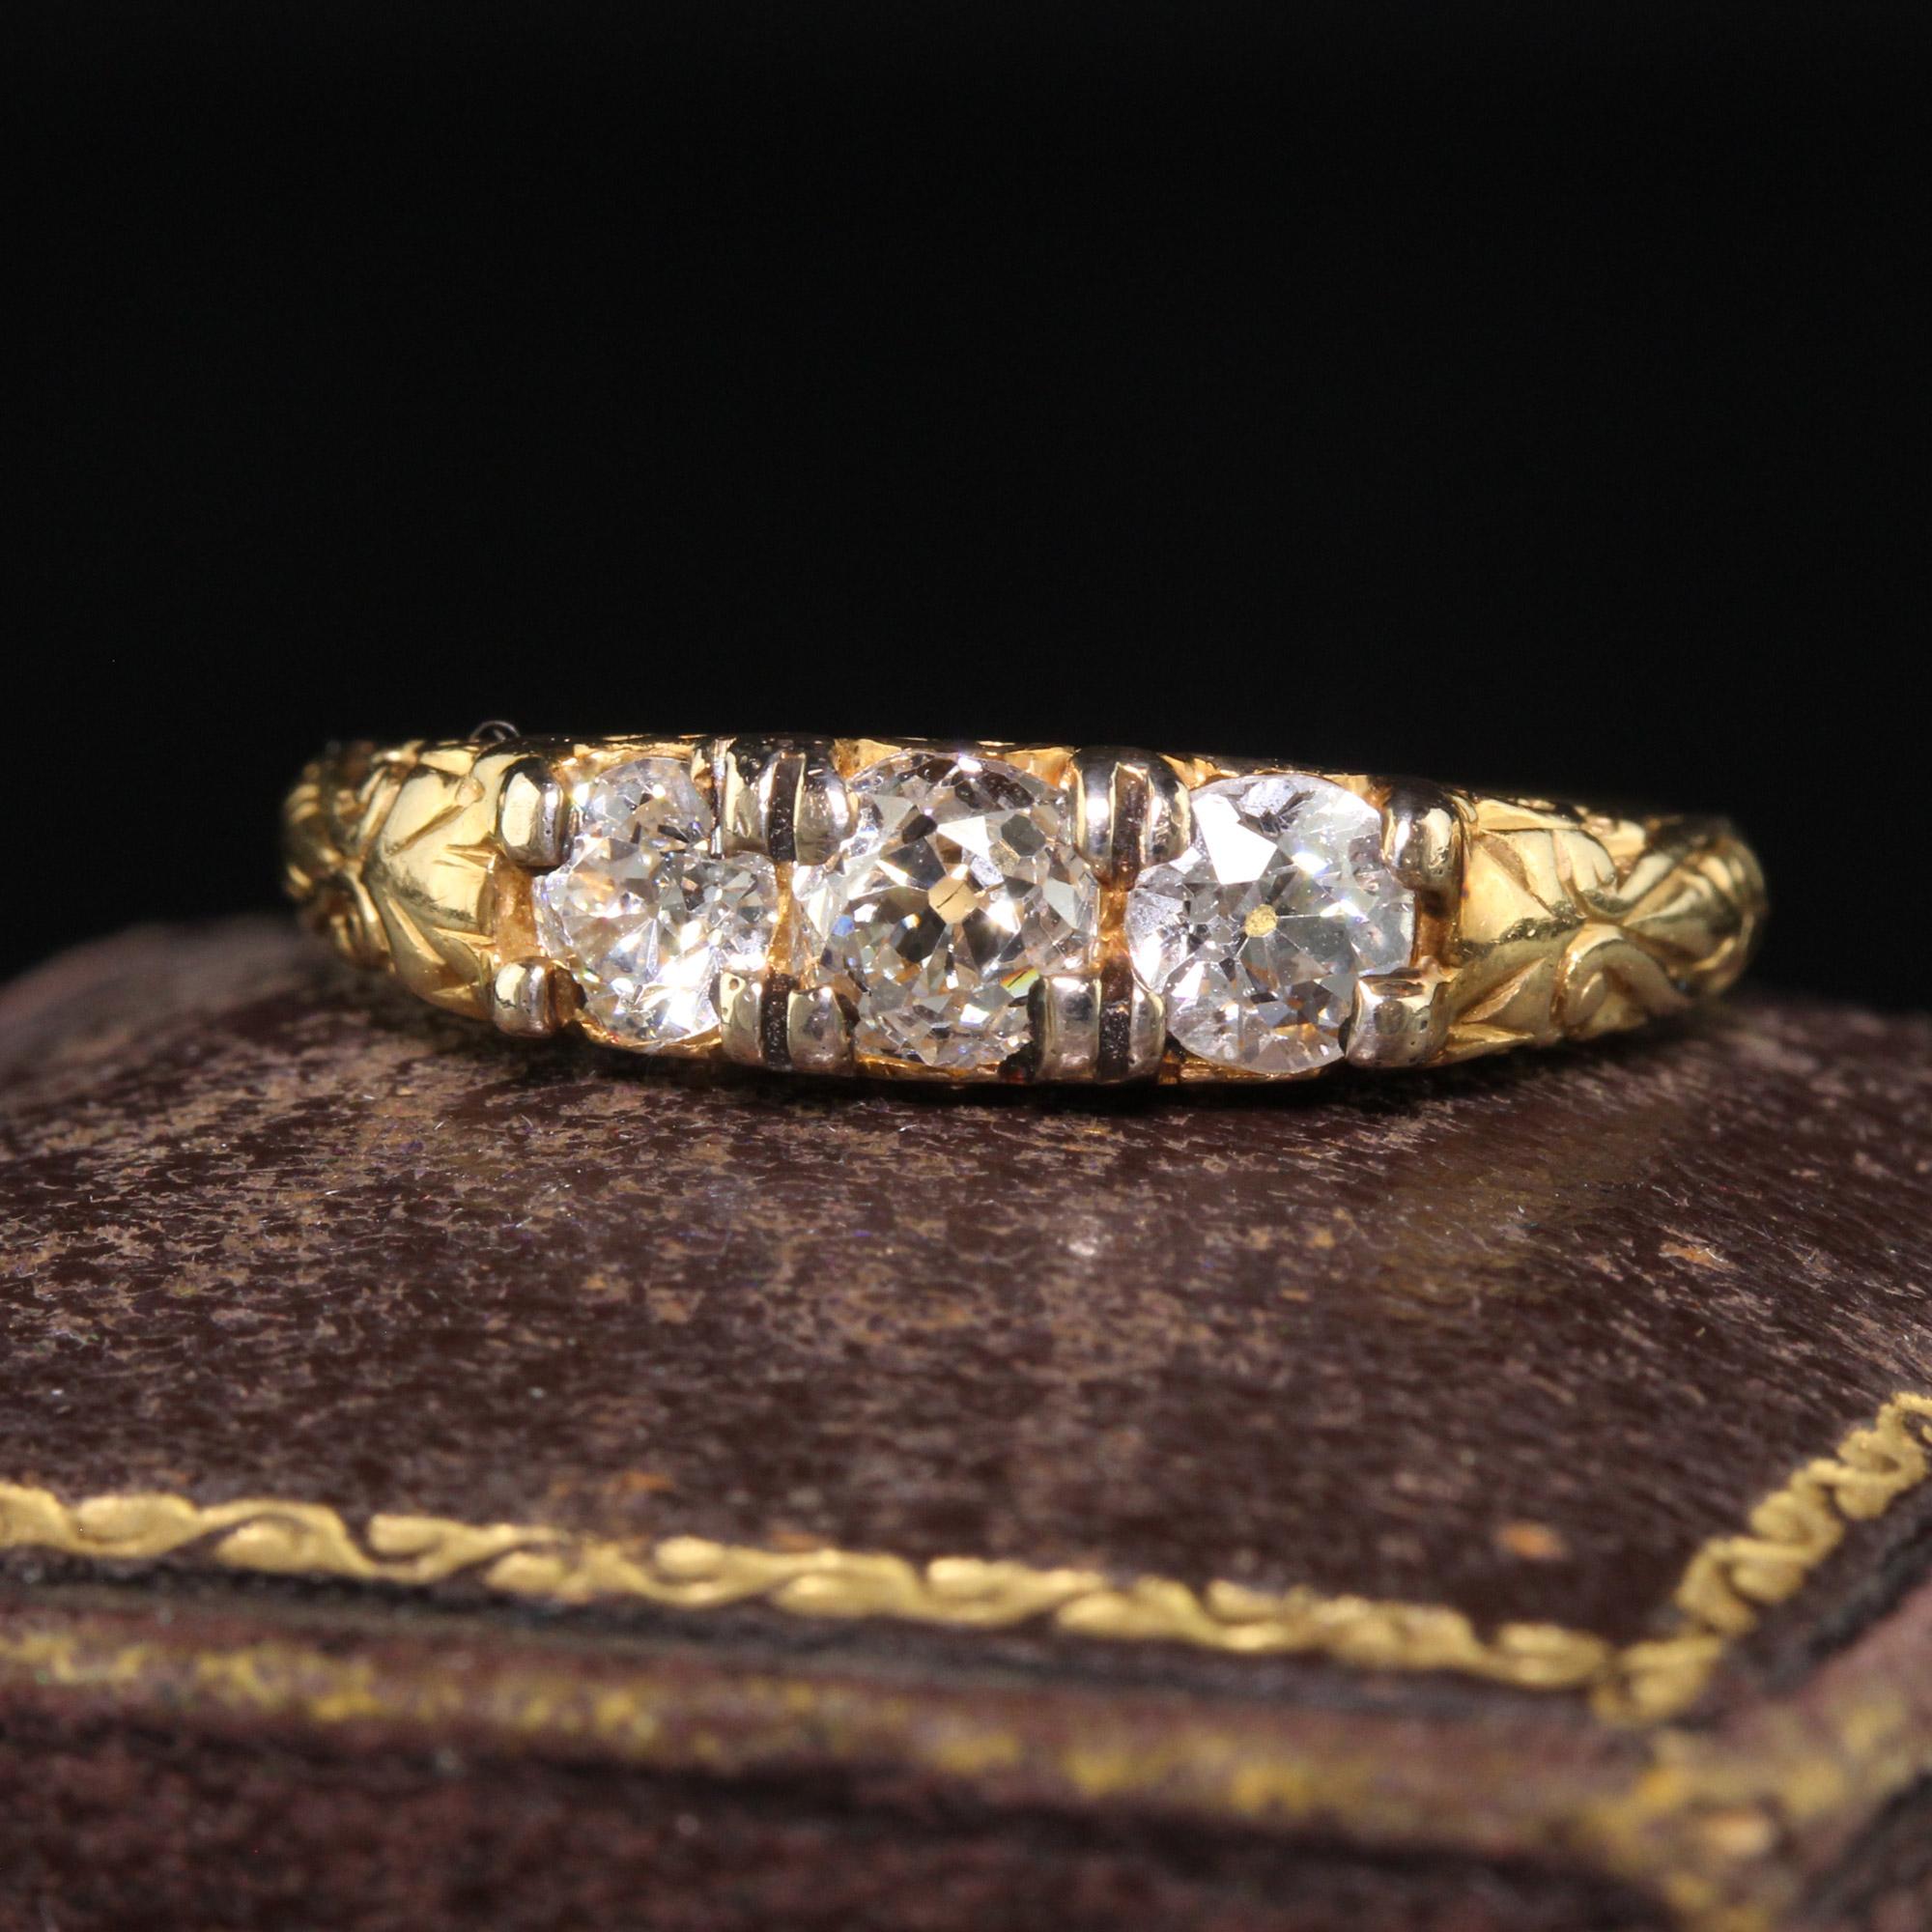 Magnifique alliance victorienne ancienne en or jaune 18 carats avec trois pierres et un diamant. Cette magnifique alliance victorienne à trois diamants est réalisée en or jaune 18 carats. Le centre contient trois gros diamants taillés à l'ancienne,